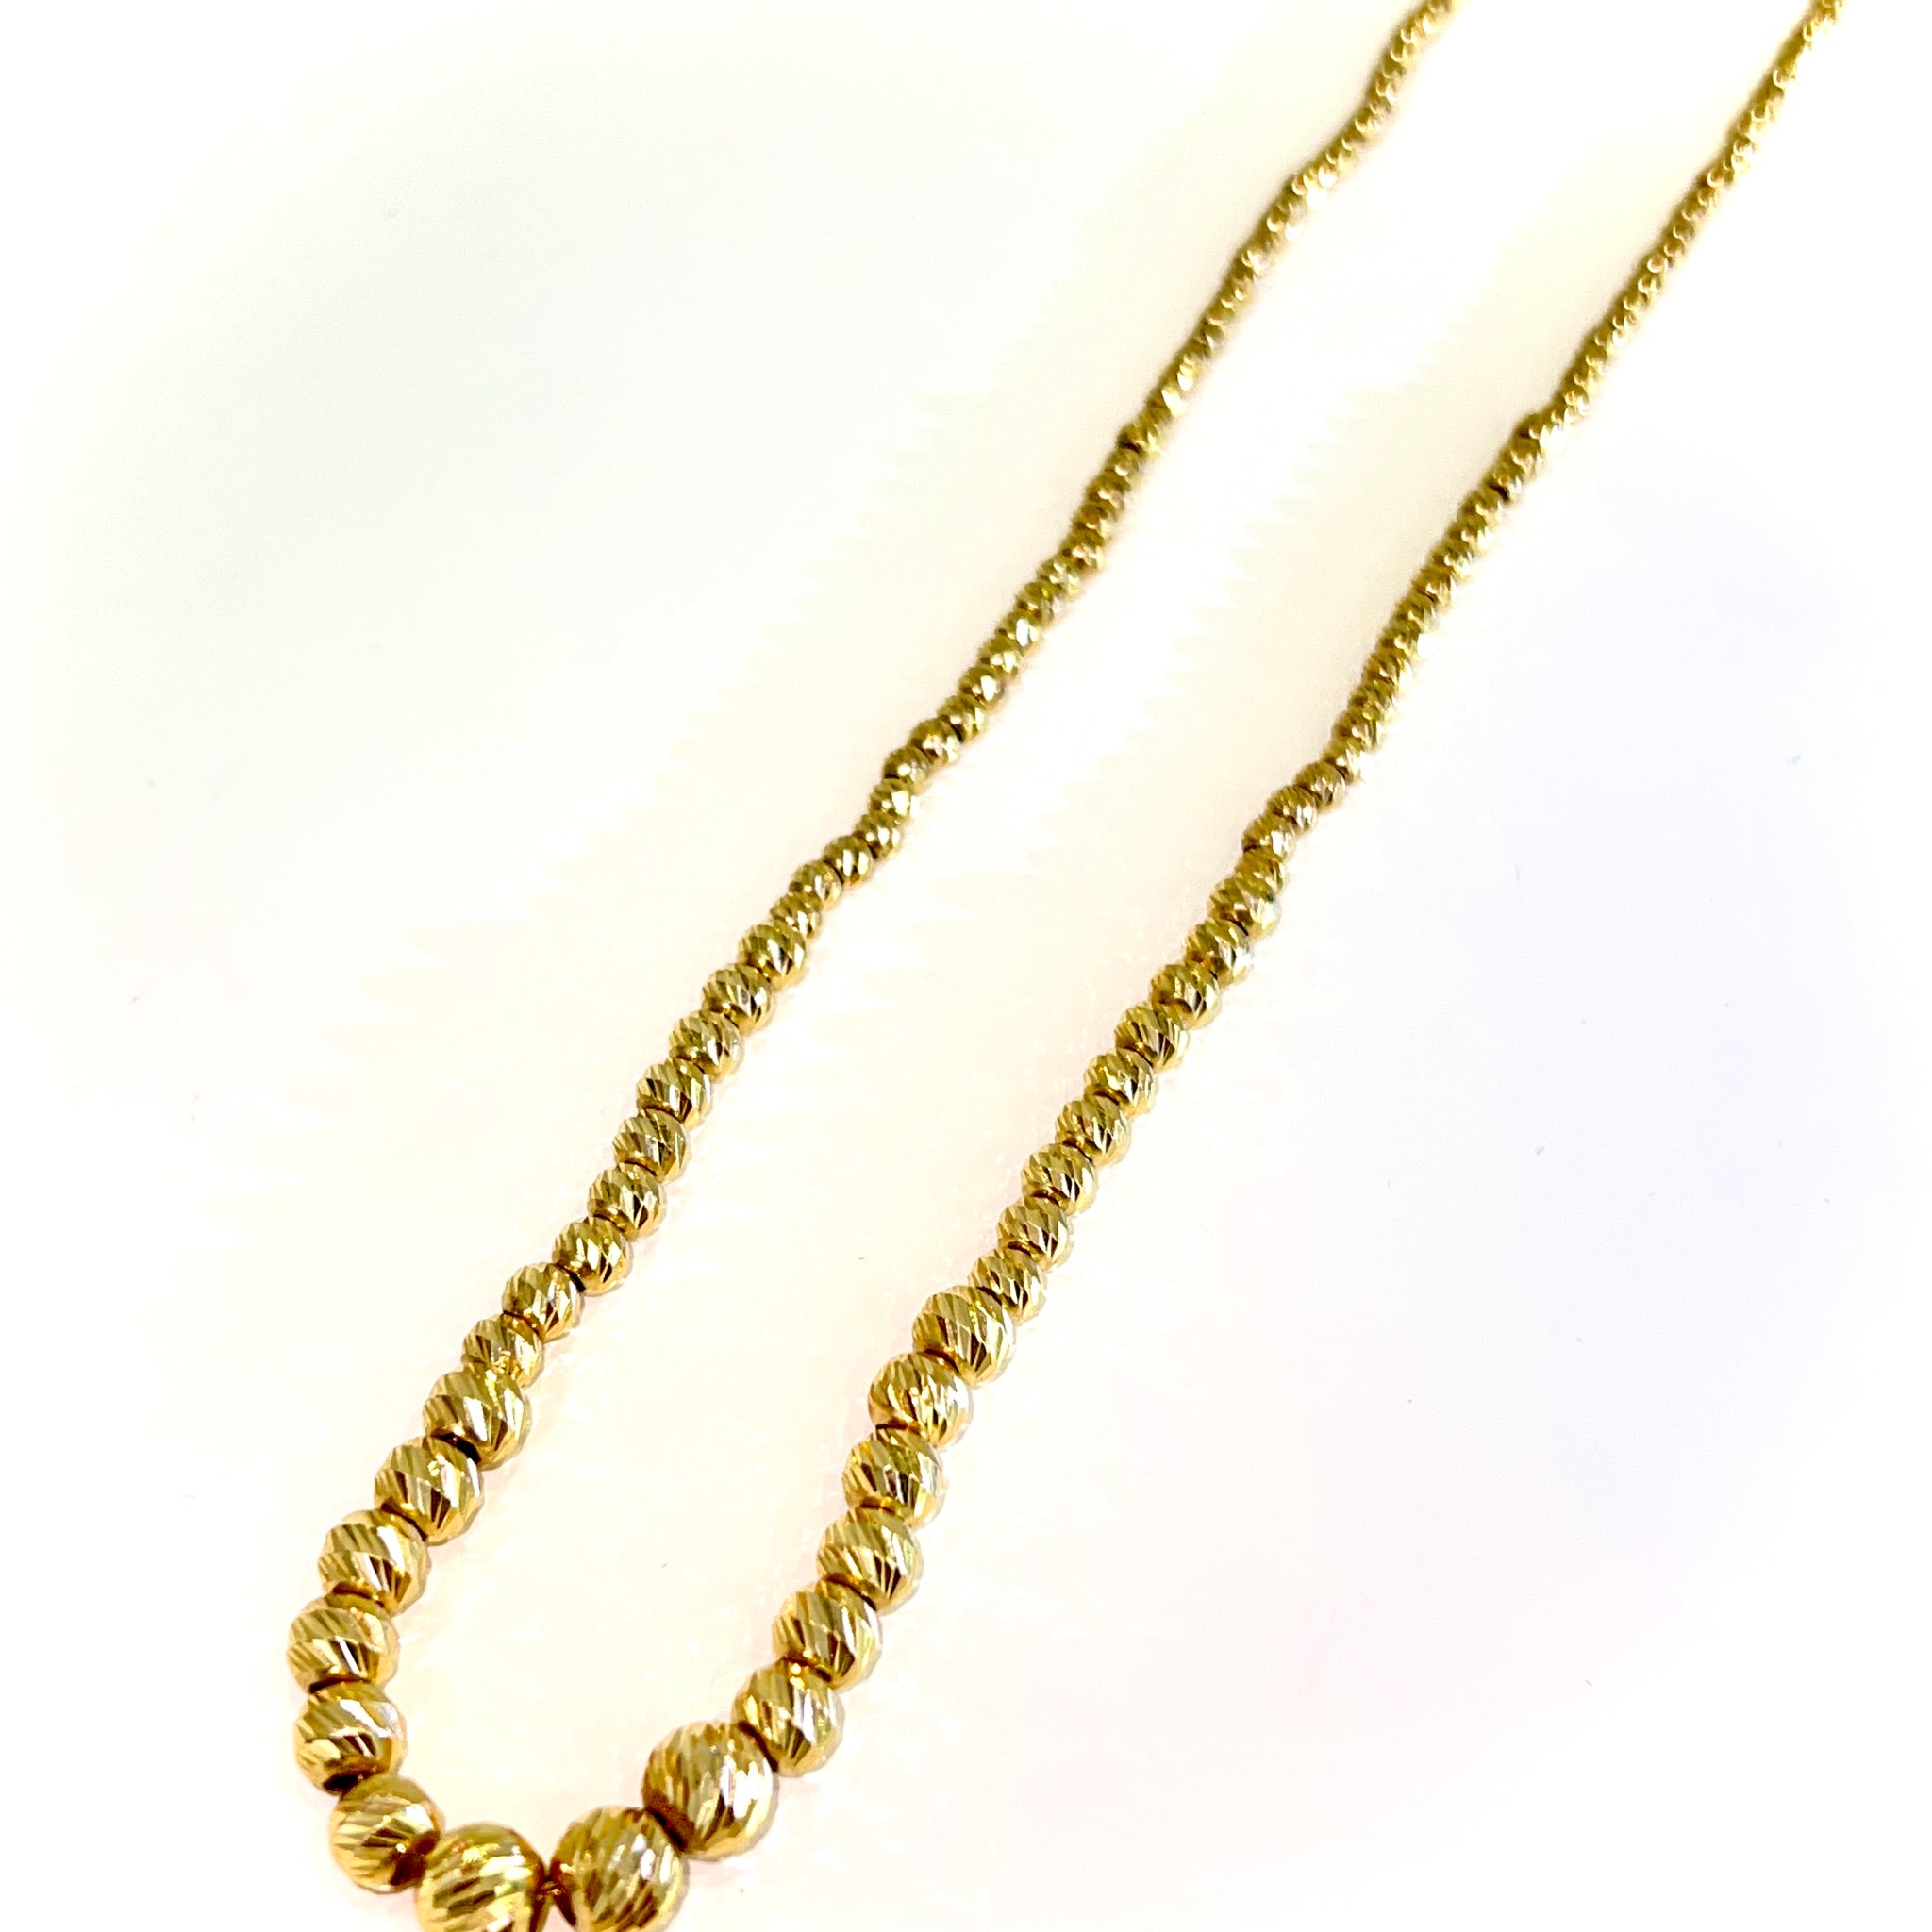 Mooncut Chain - 14 carat gold - 50cm / 2.5 - 6mm